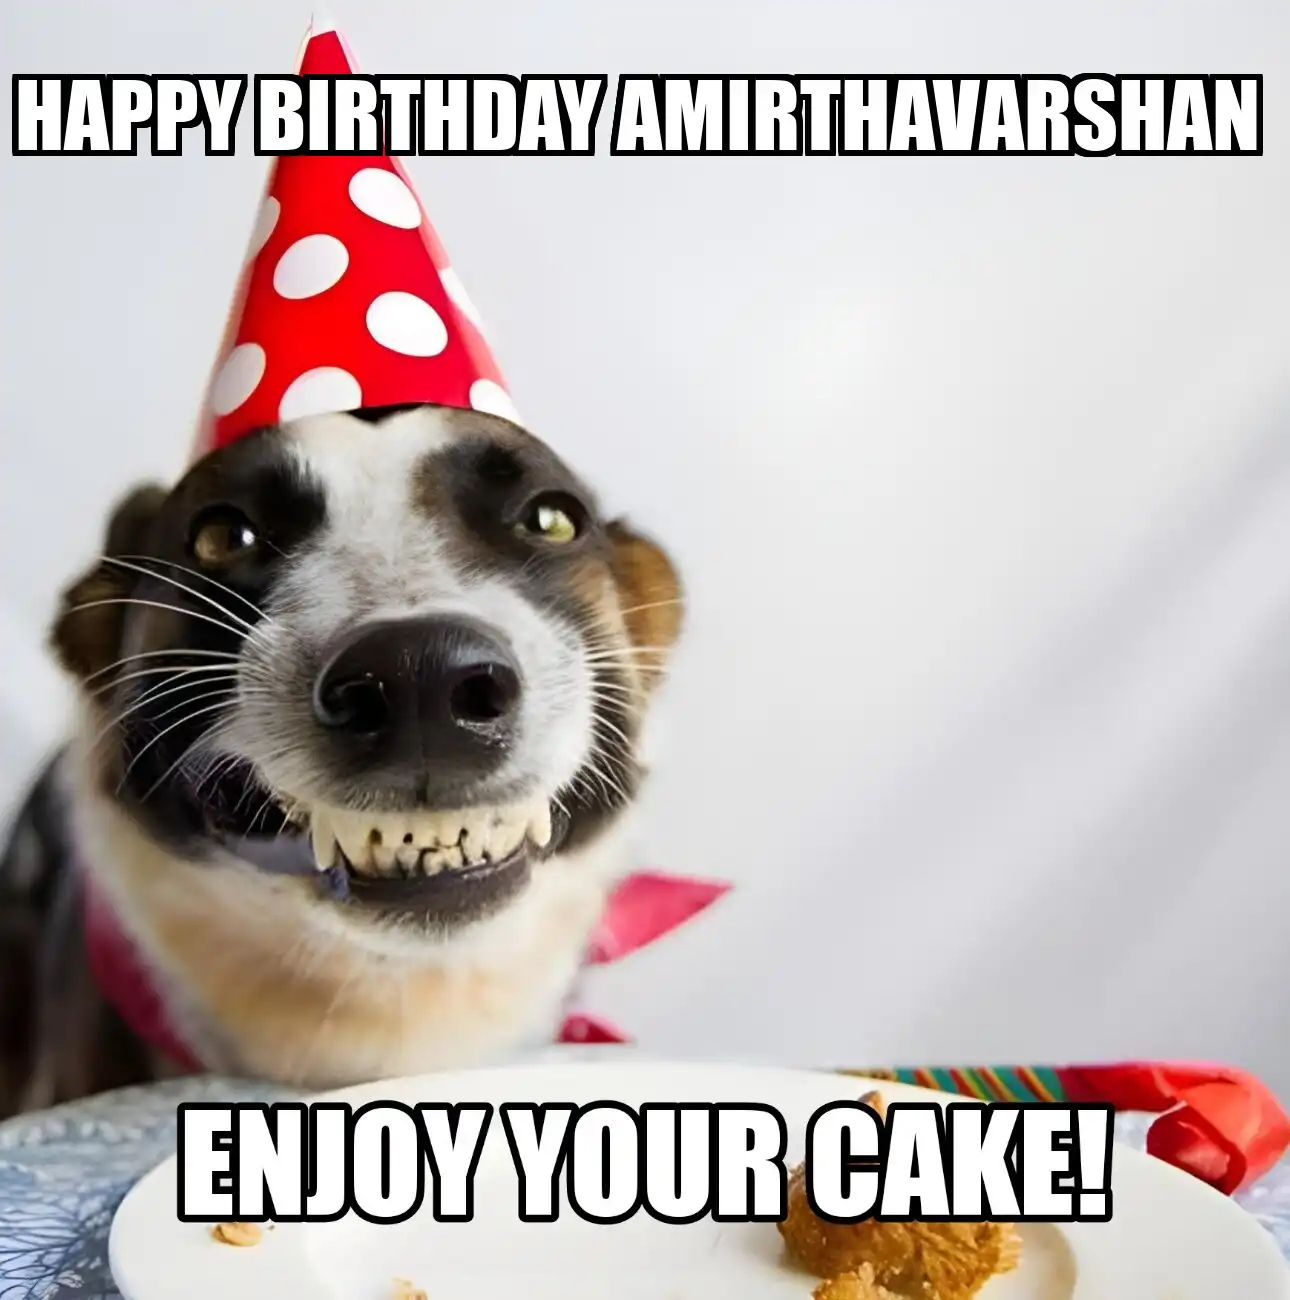 Happy Birthday Amirthavarshan Enjoy Your Cake Dog Meme